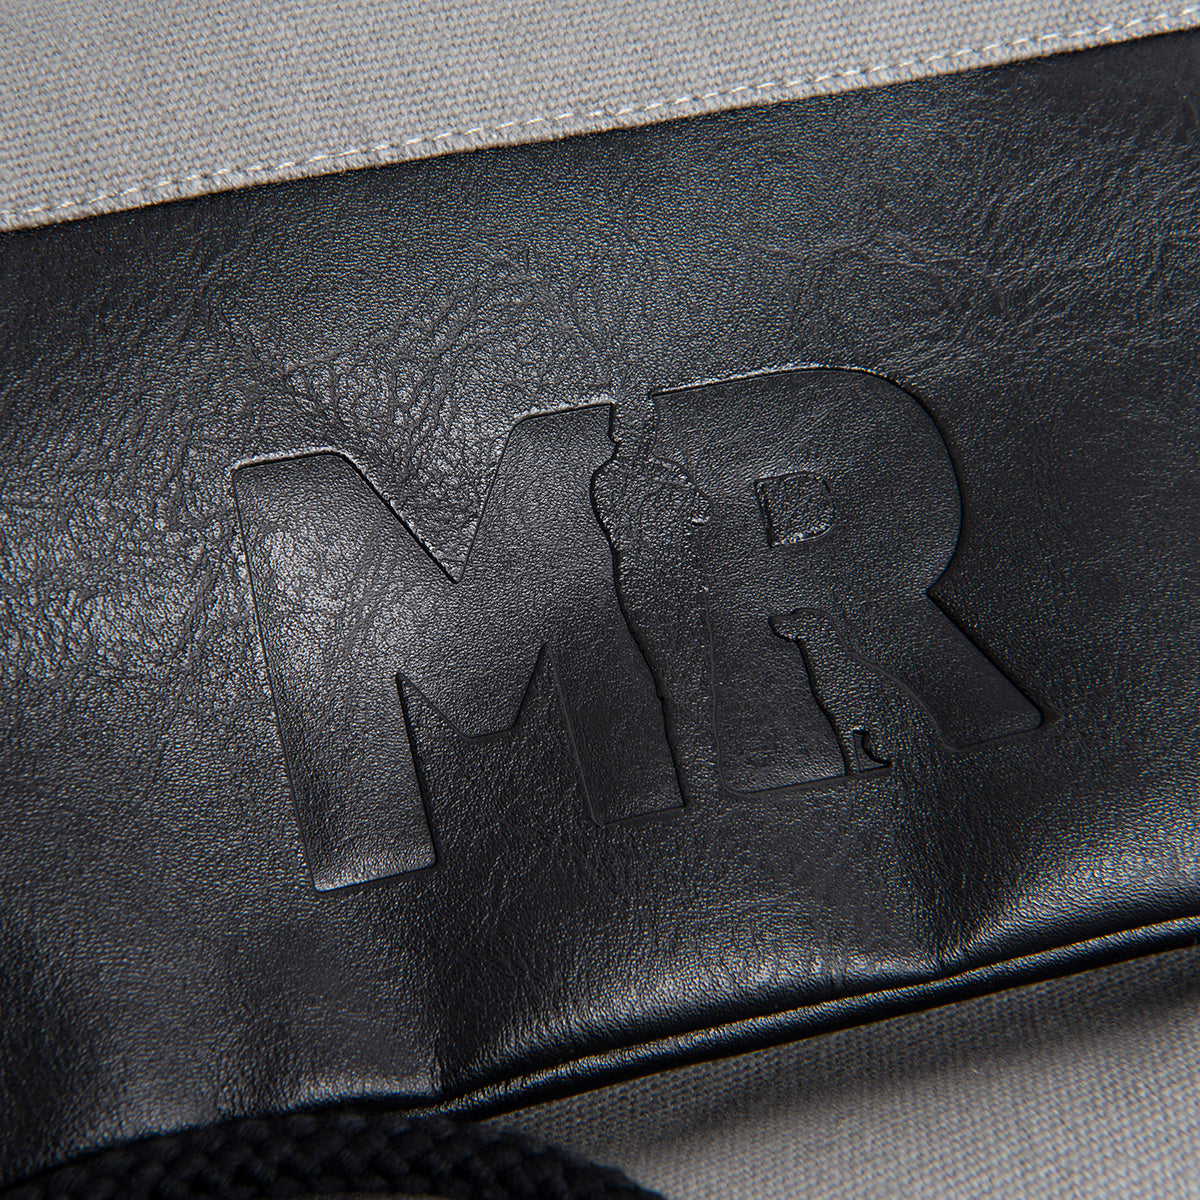 Fokus auf dem geprägtem Martin Rütter Logo auf dem unteren Bereich des Rucksackbeutels aus schwarzem Kunstleder 